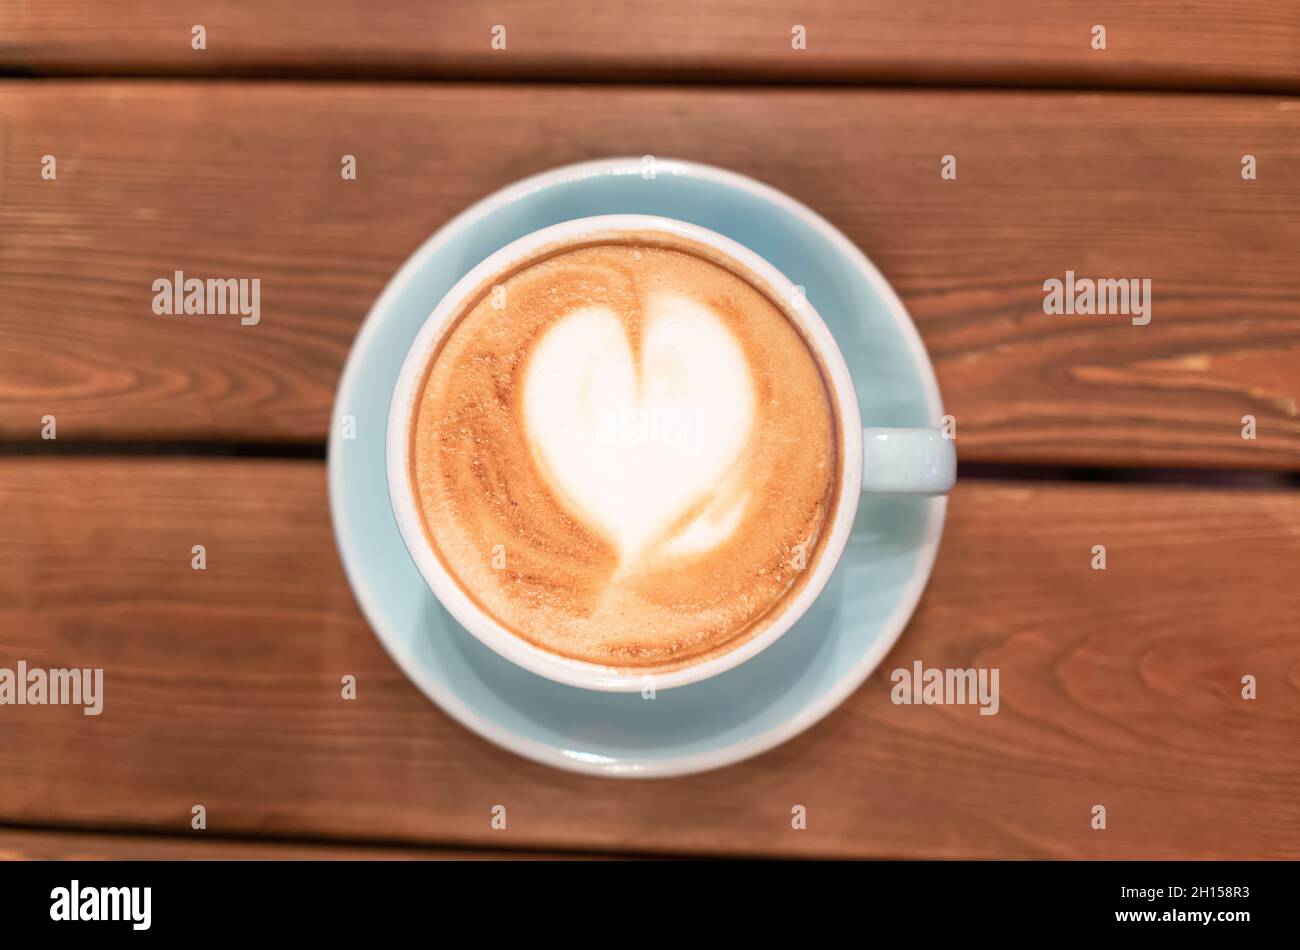 Coeur de mousse de café dans une tasse bleue sur une table en bois, vue de dessus.Cappuccino ou mocha le matin dans un café.Latte Art Banque D'Images